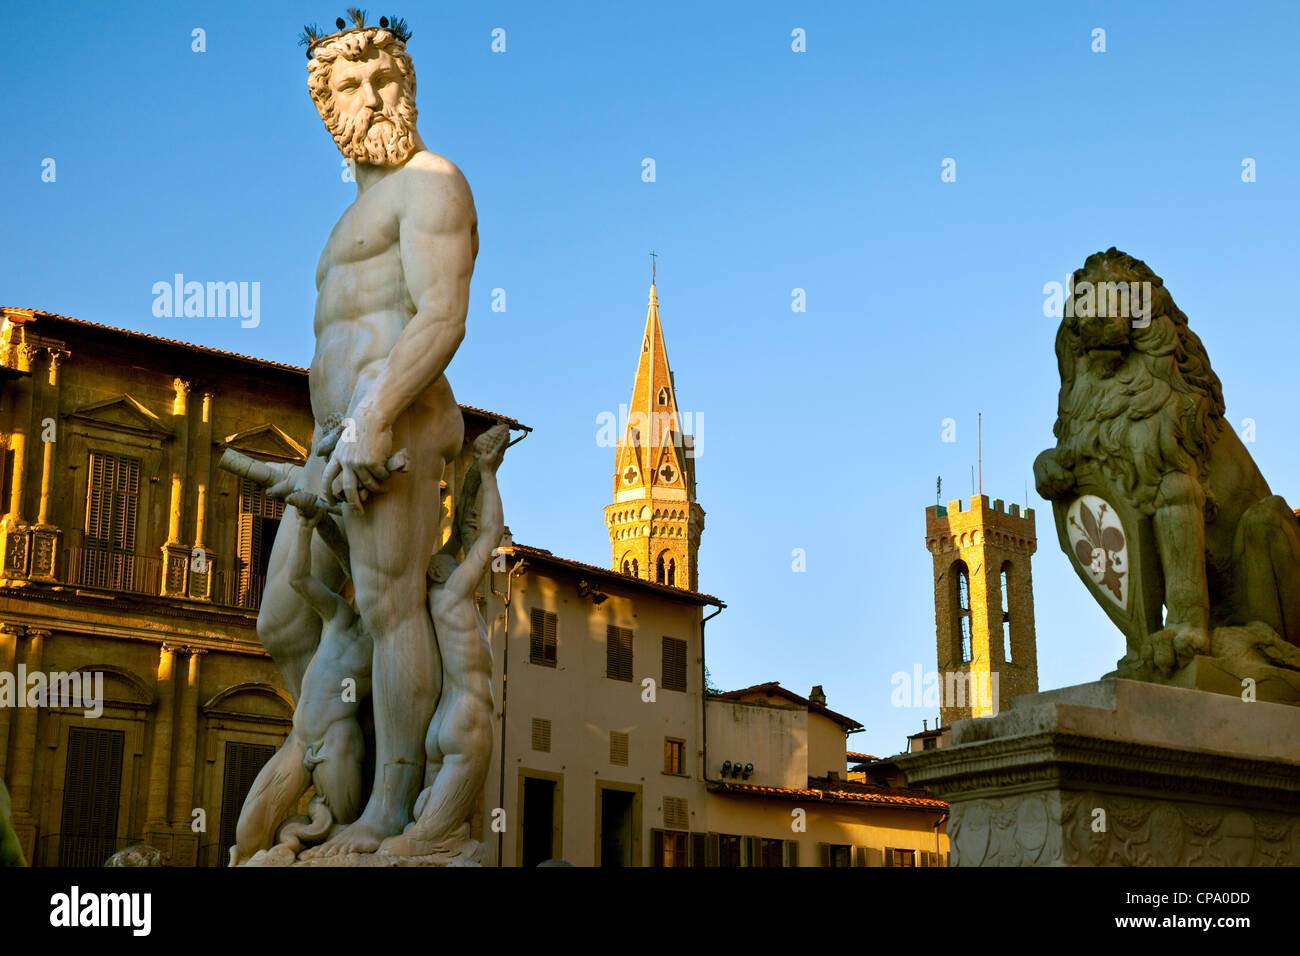 Statue of Neptune in Piazza della Signoria, Florence Tuscany Italy Stock Photo